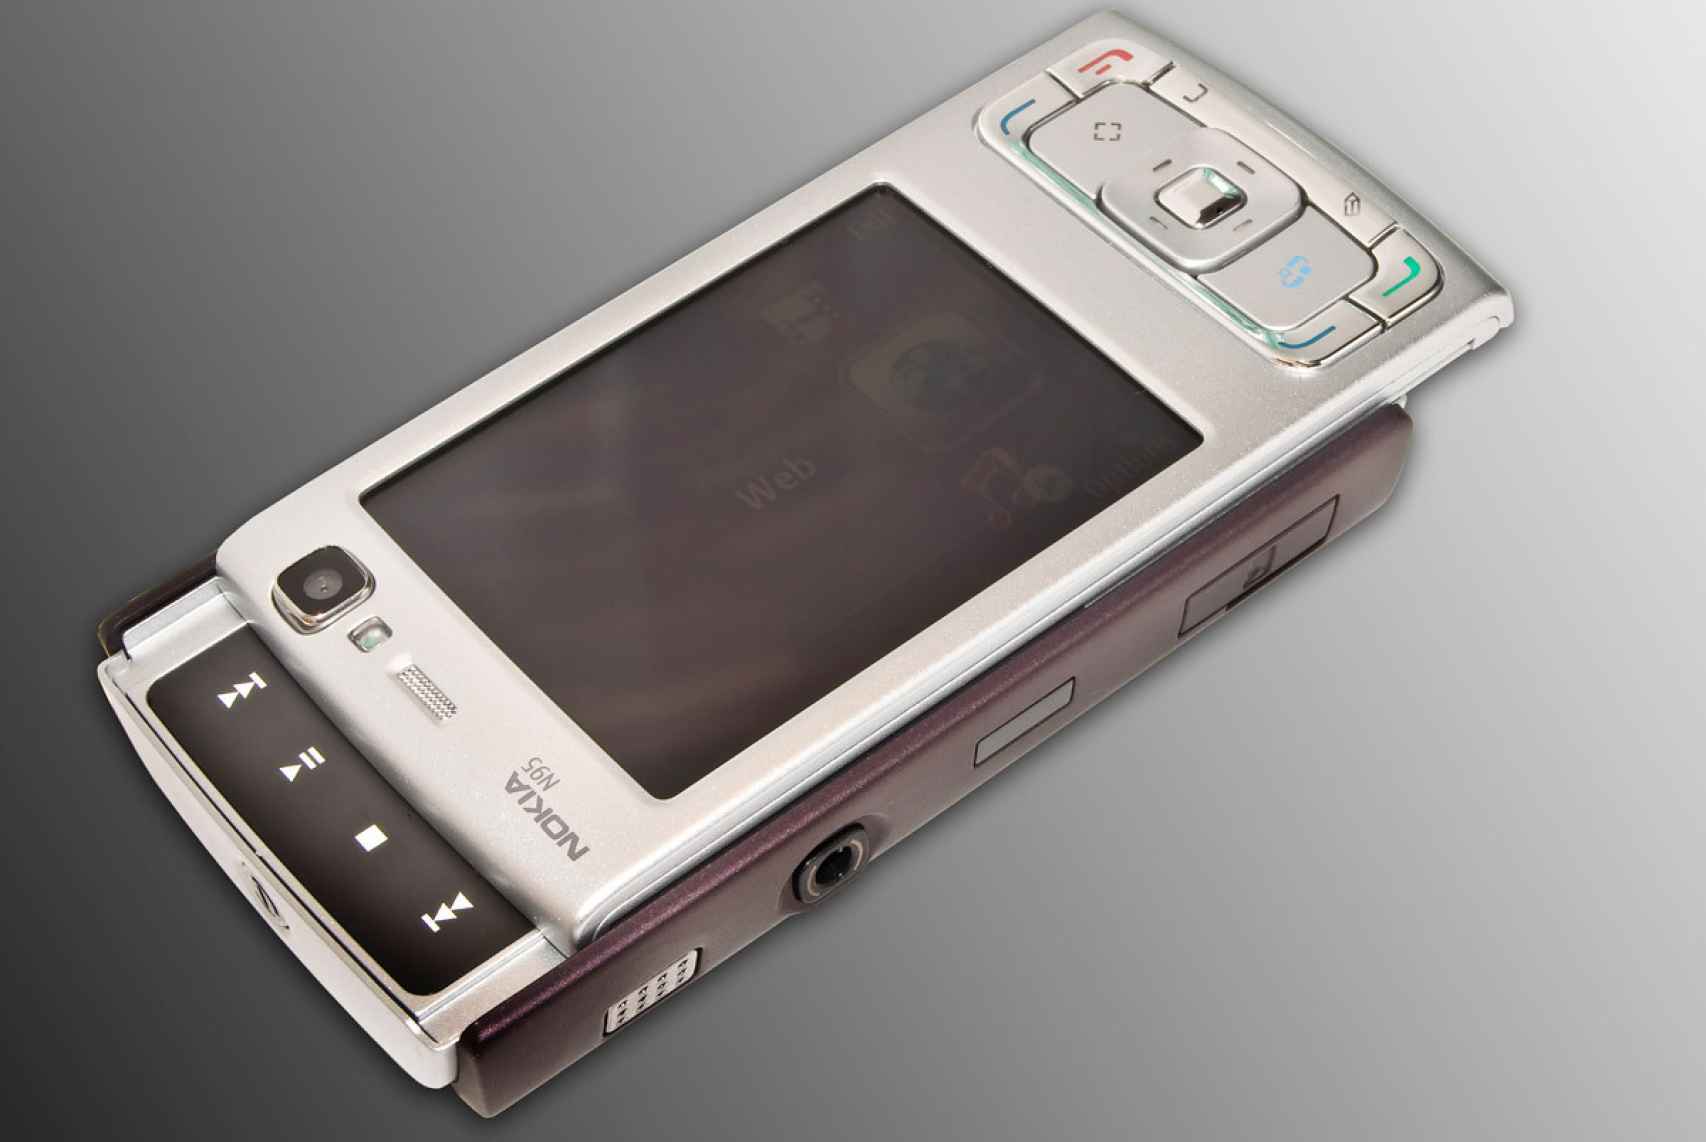 La historia del Nokia N95 como el móvil perfecto o la vez que más me equivoqué